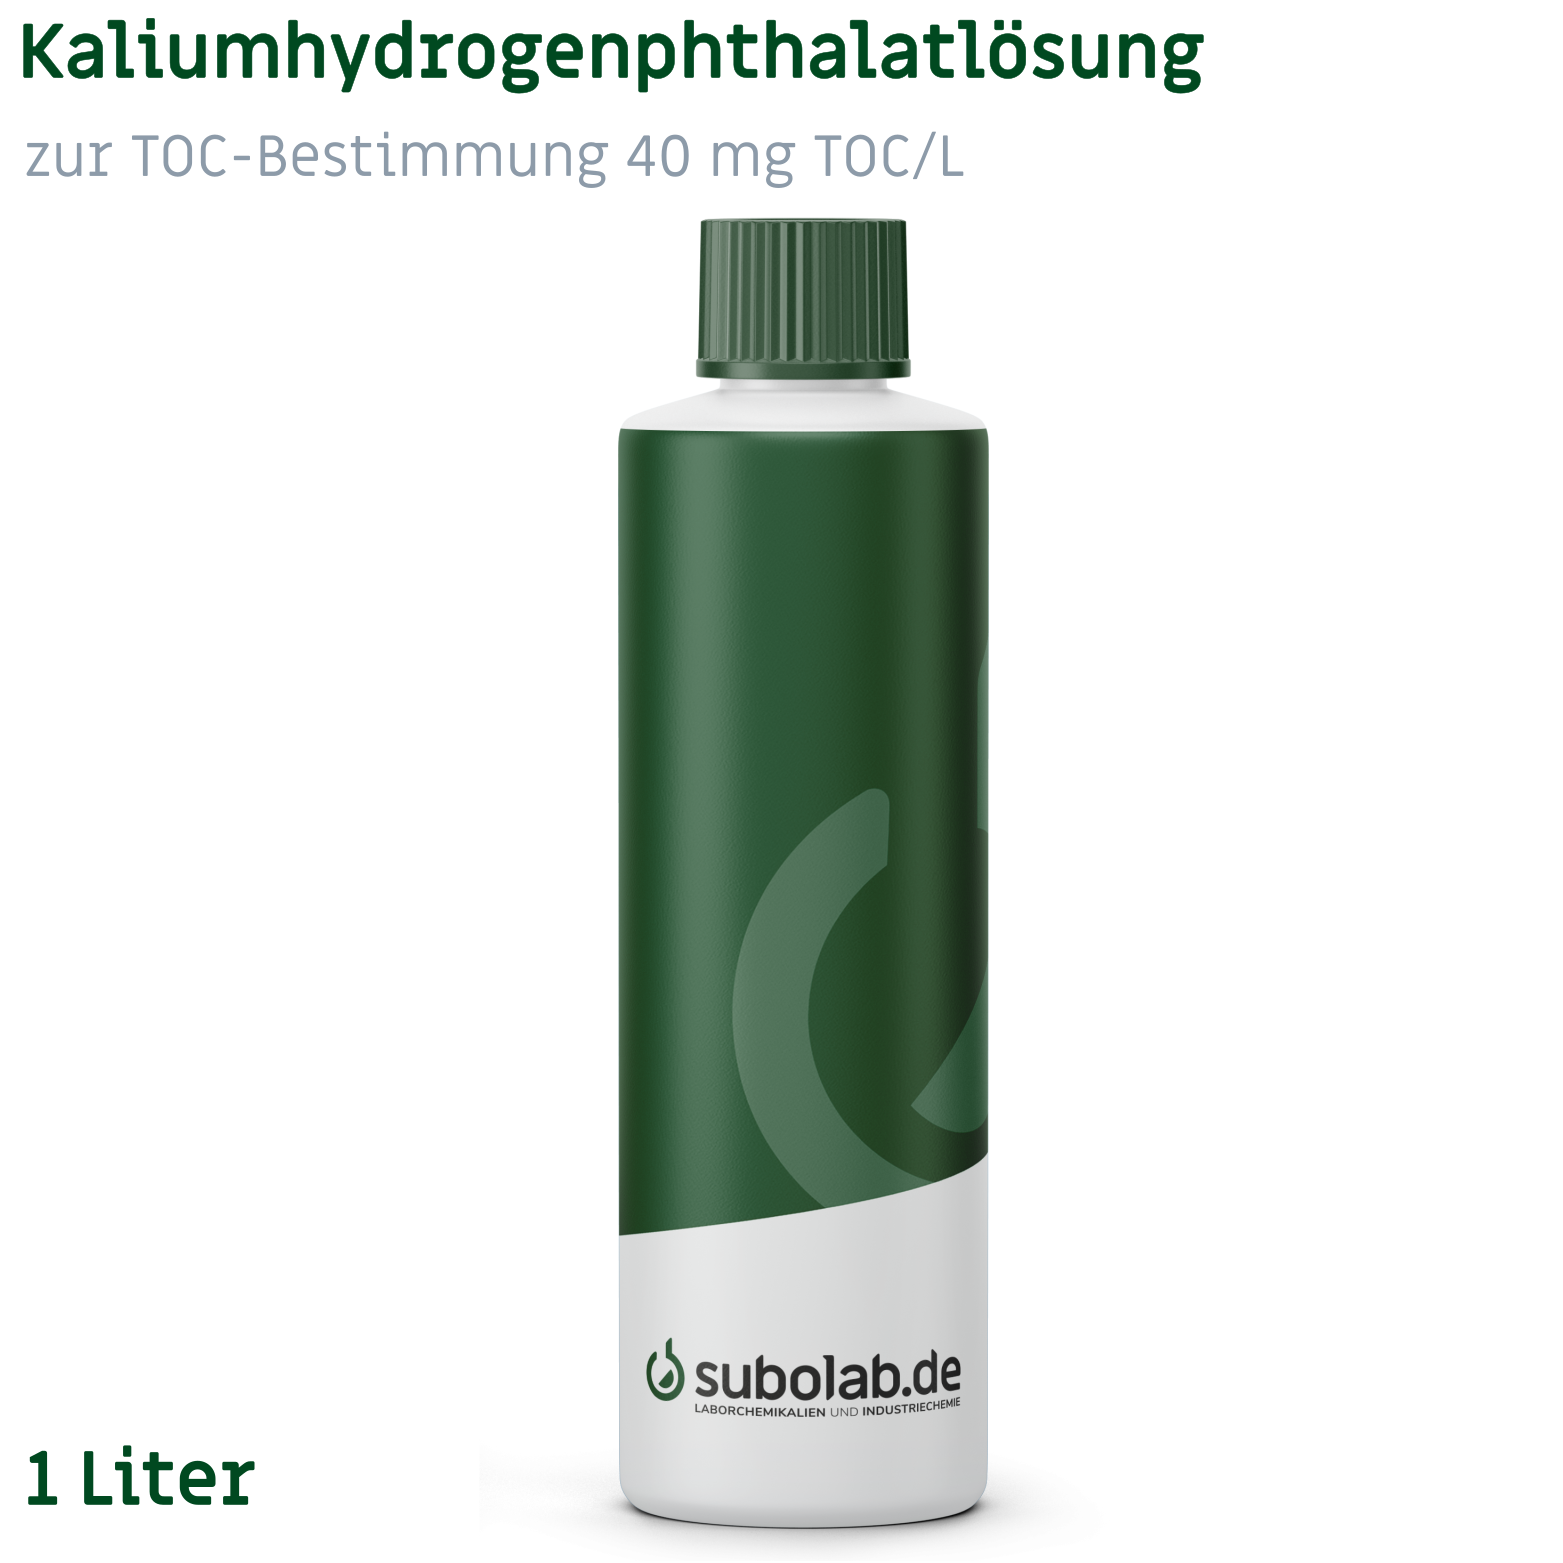 Bild von Kaliumhydrogenphthalatlösung zur TOC-Bestimmung 40 mg TOC/L (1 Liter)